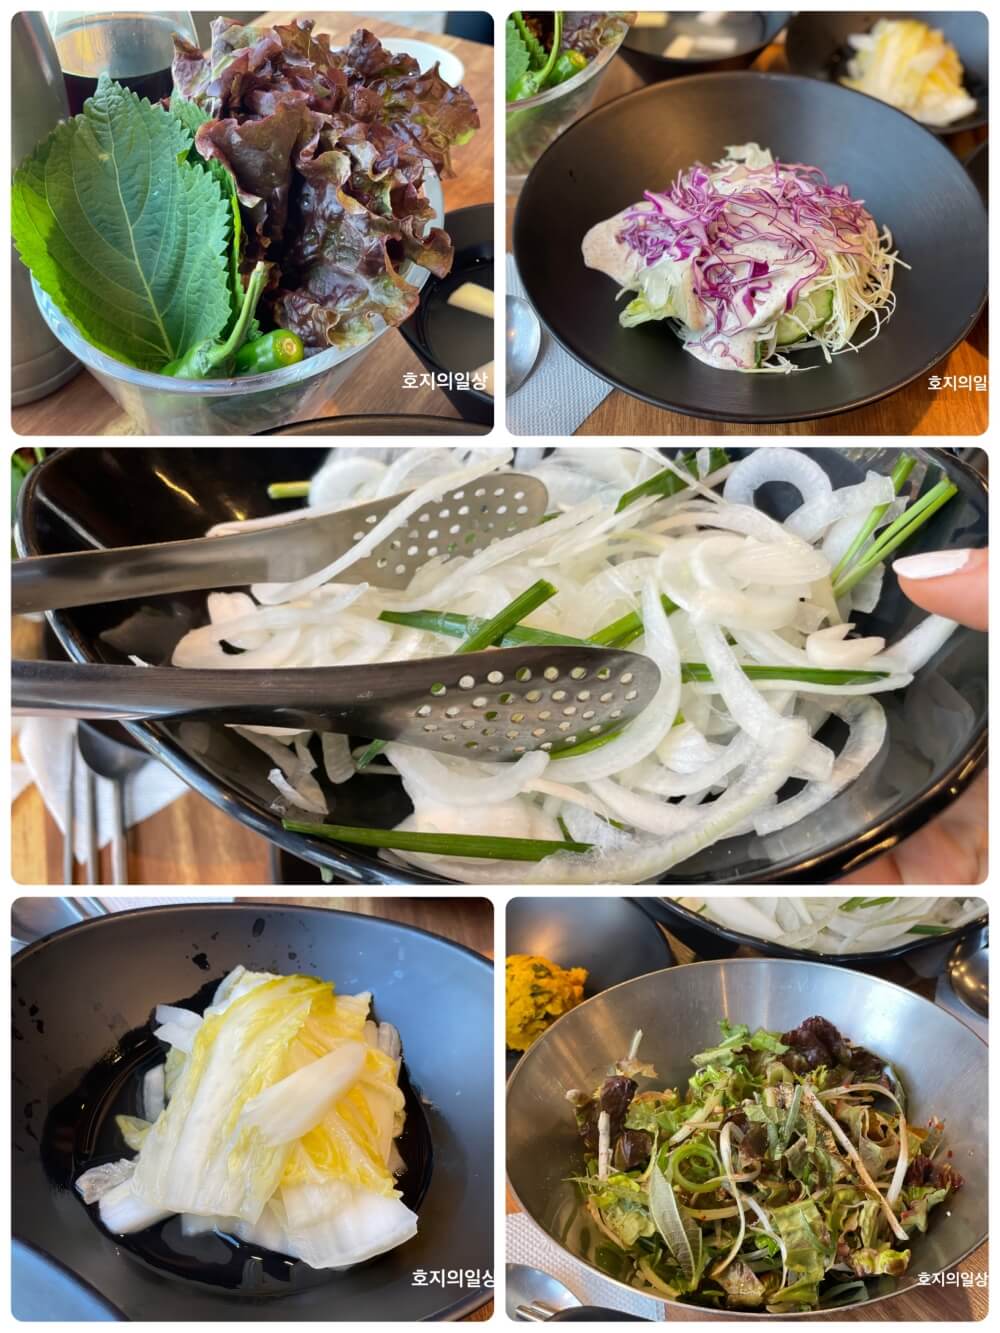 홍천 돼지갈비 맛집 풍년갈비 - 기본찬 채소류